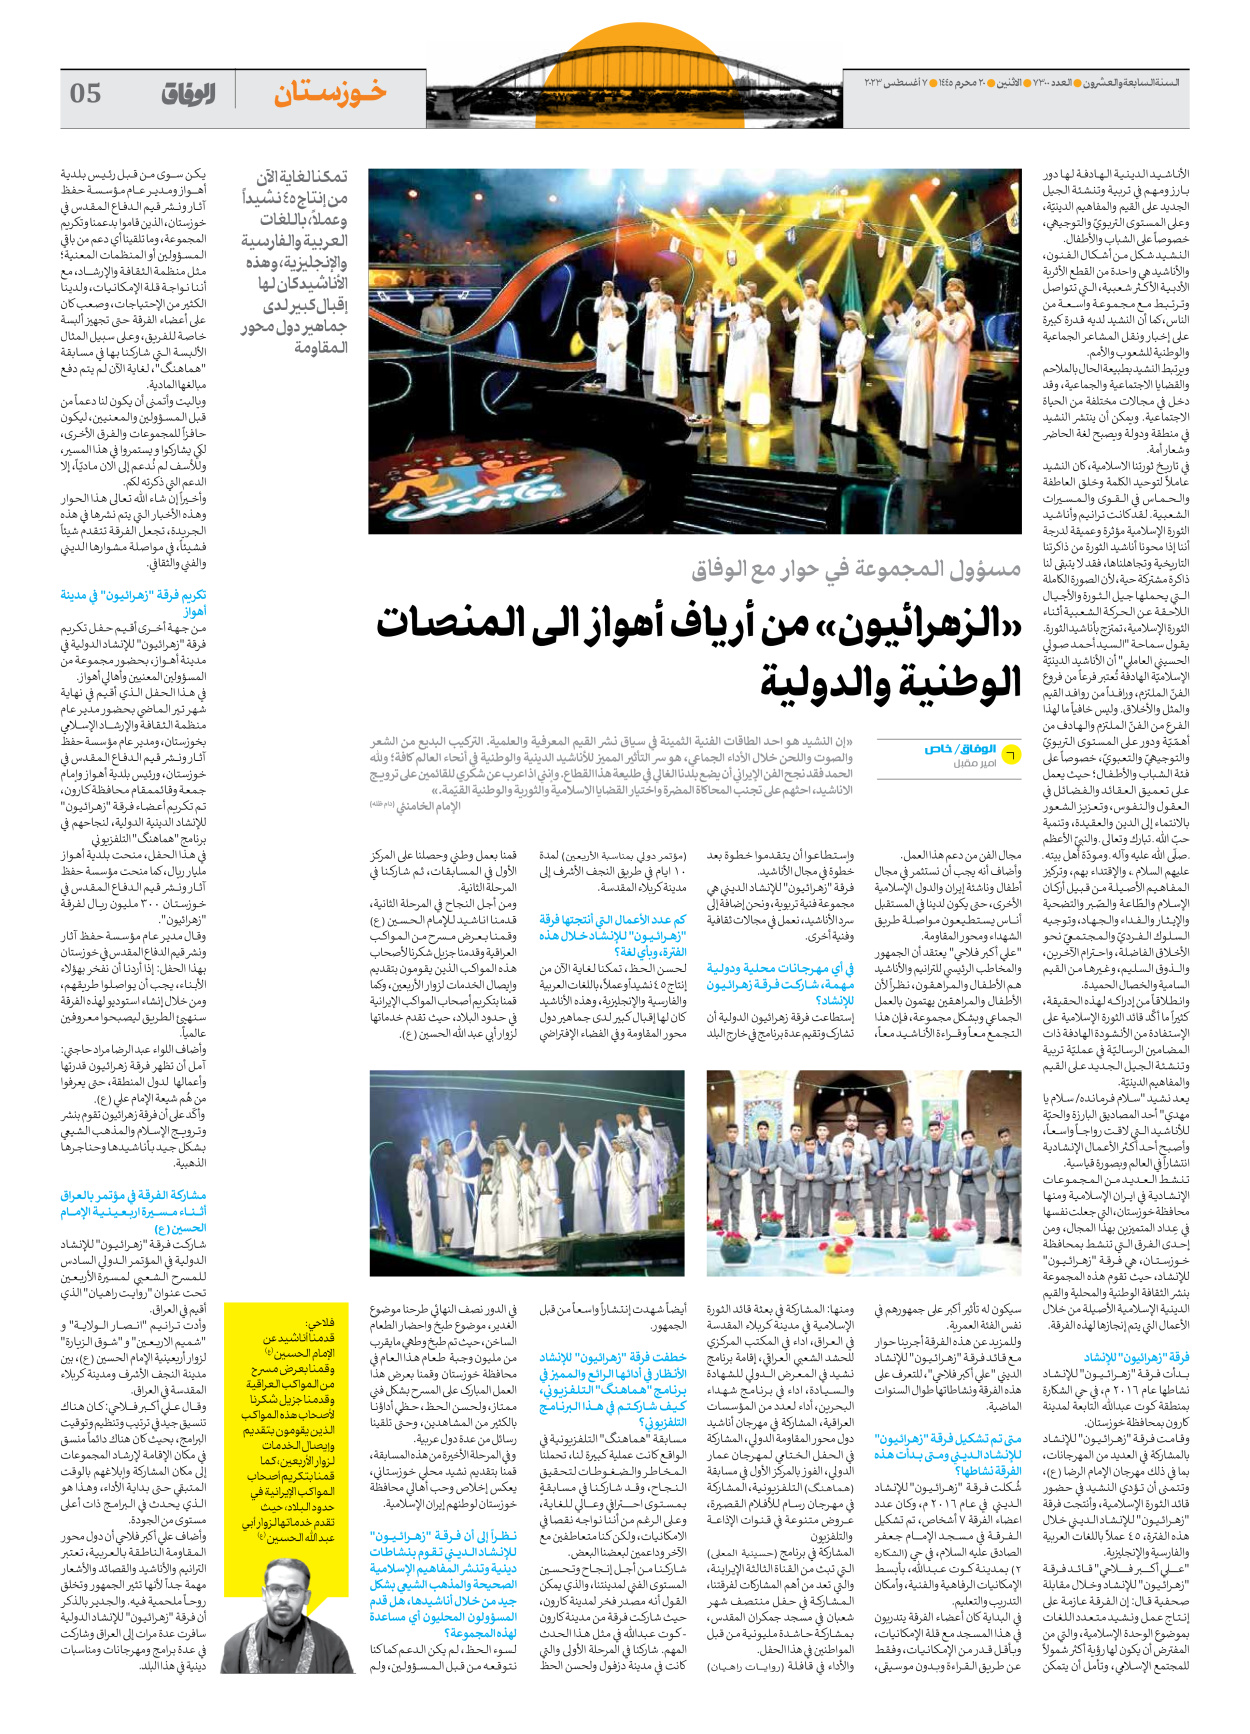 صحیفة ایران الدولیة الوفاق - العدد سبعة آلاف وثلاثمائة - ٠٧ أغسطس ٢٠٢٣ - الصفحة ٥